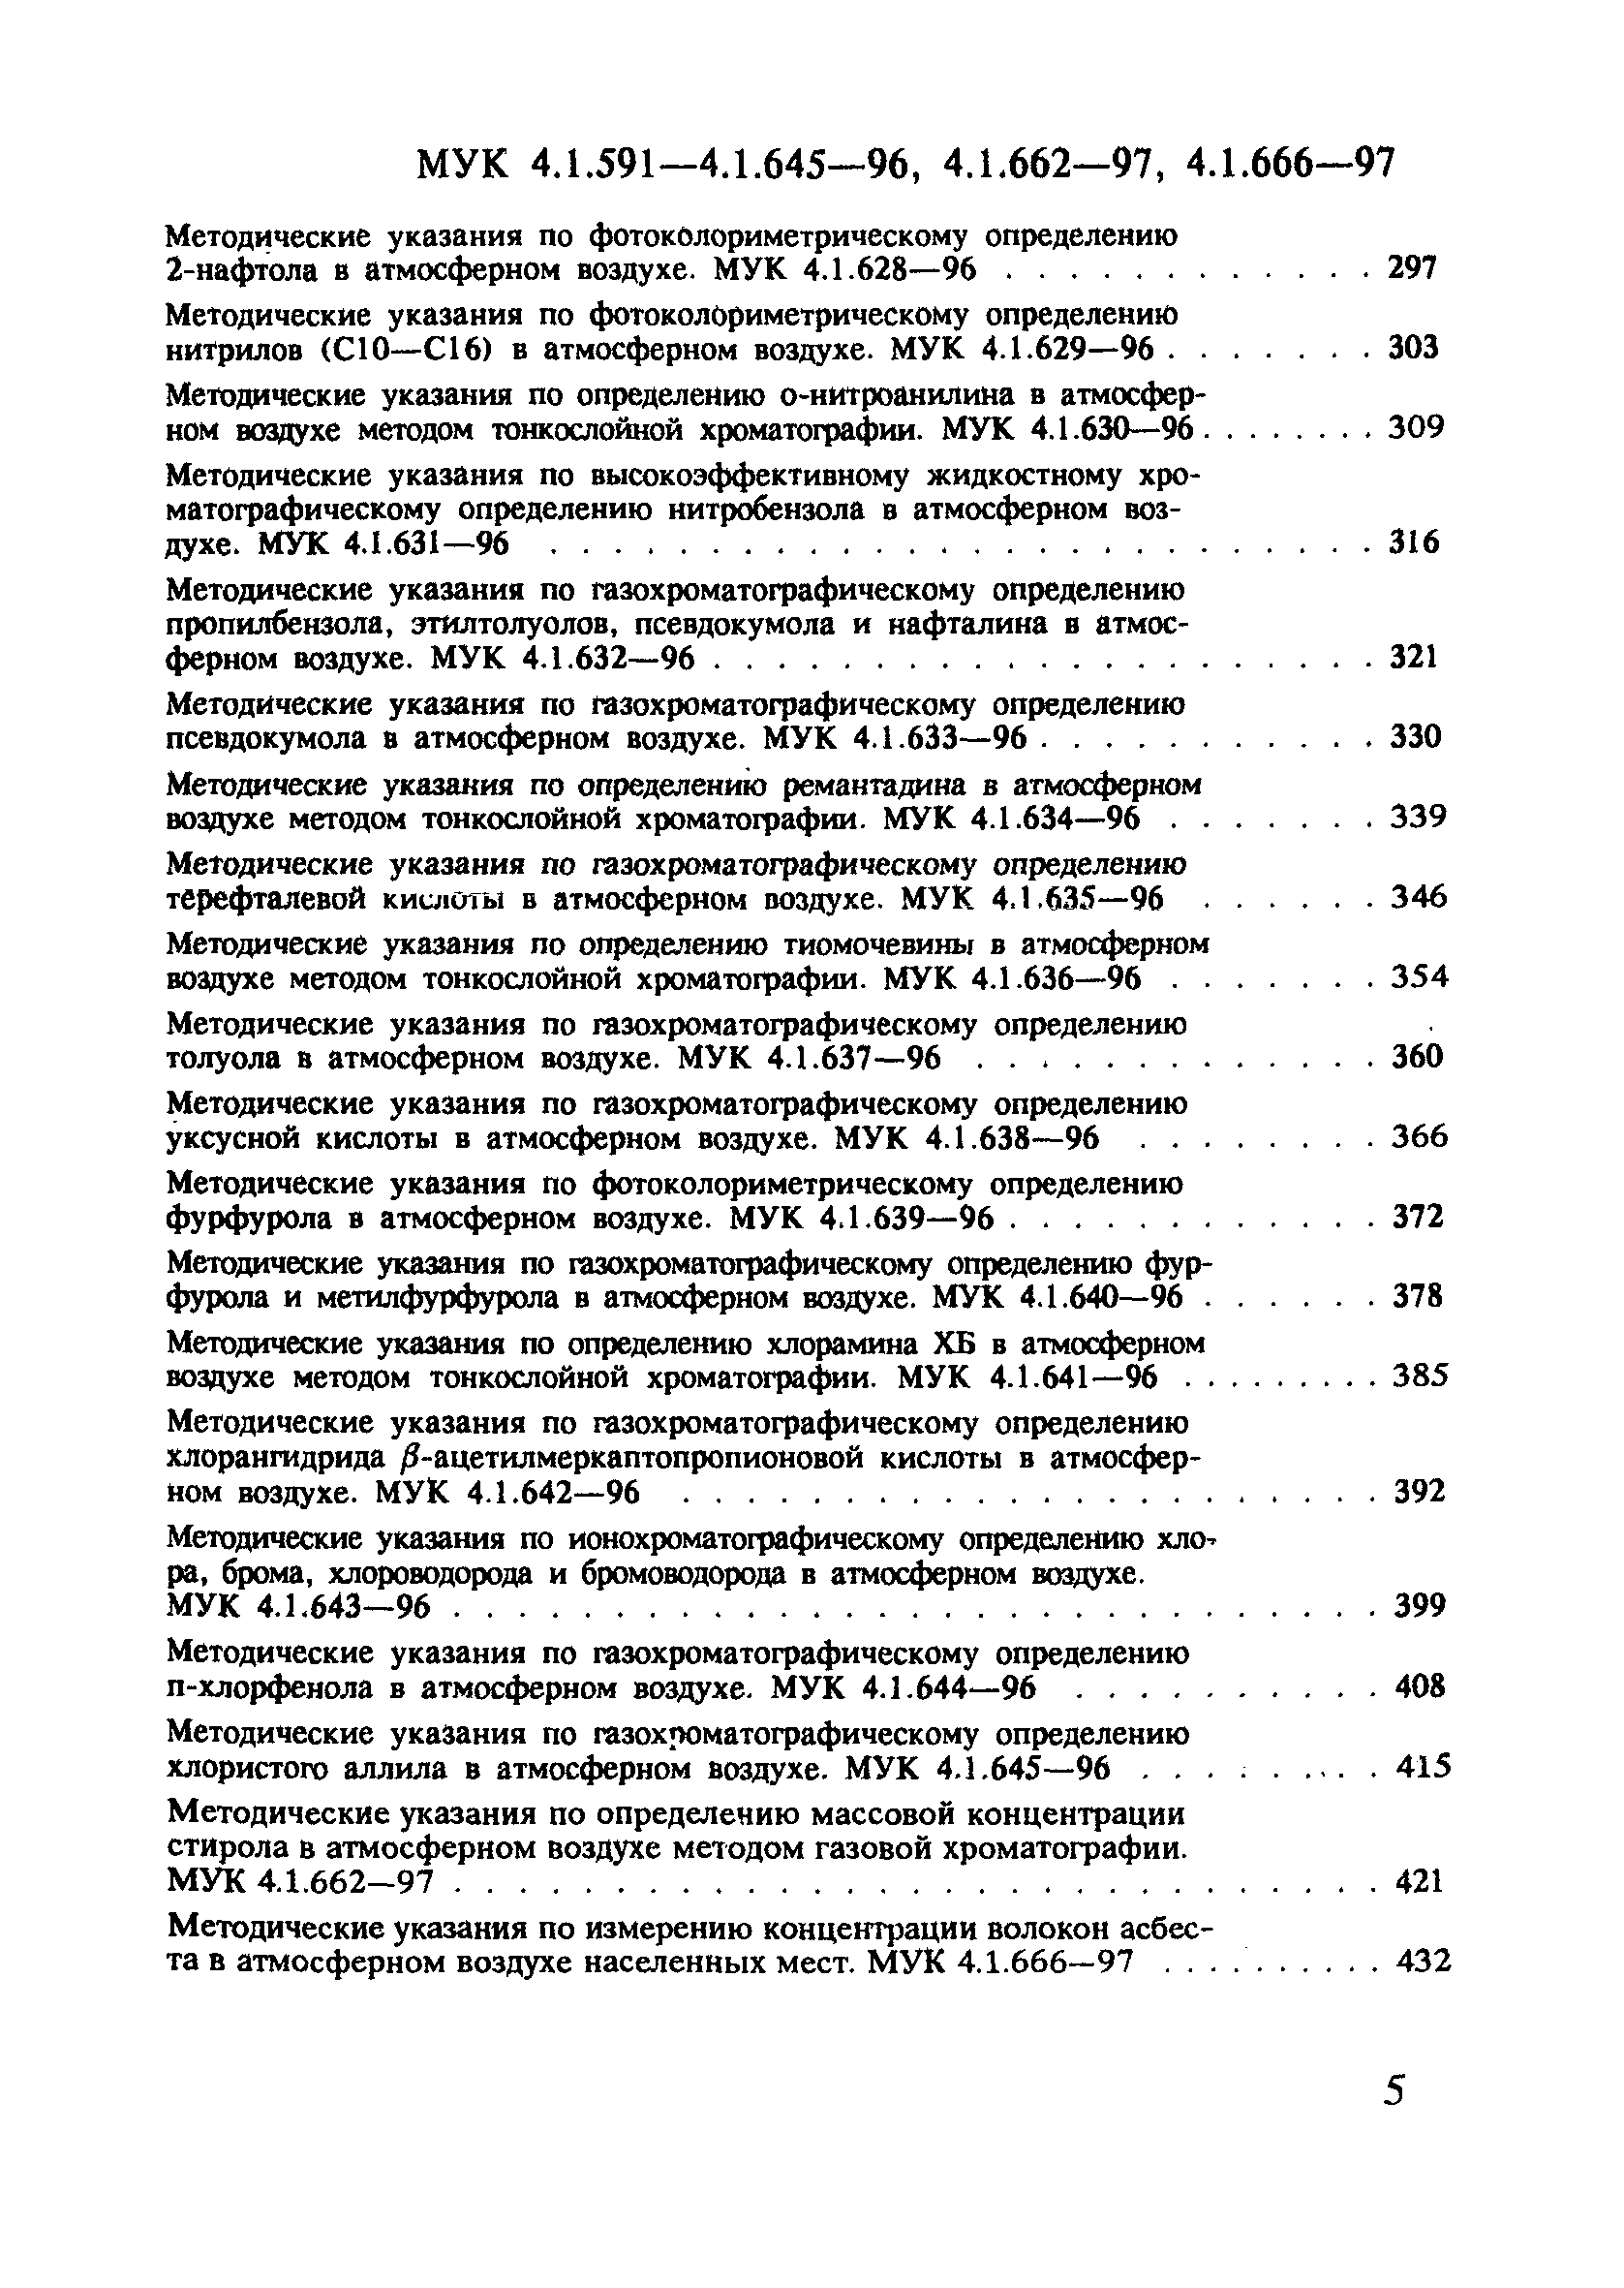 МУК 4.1.641-96